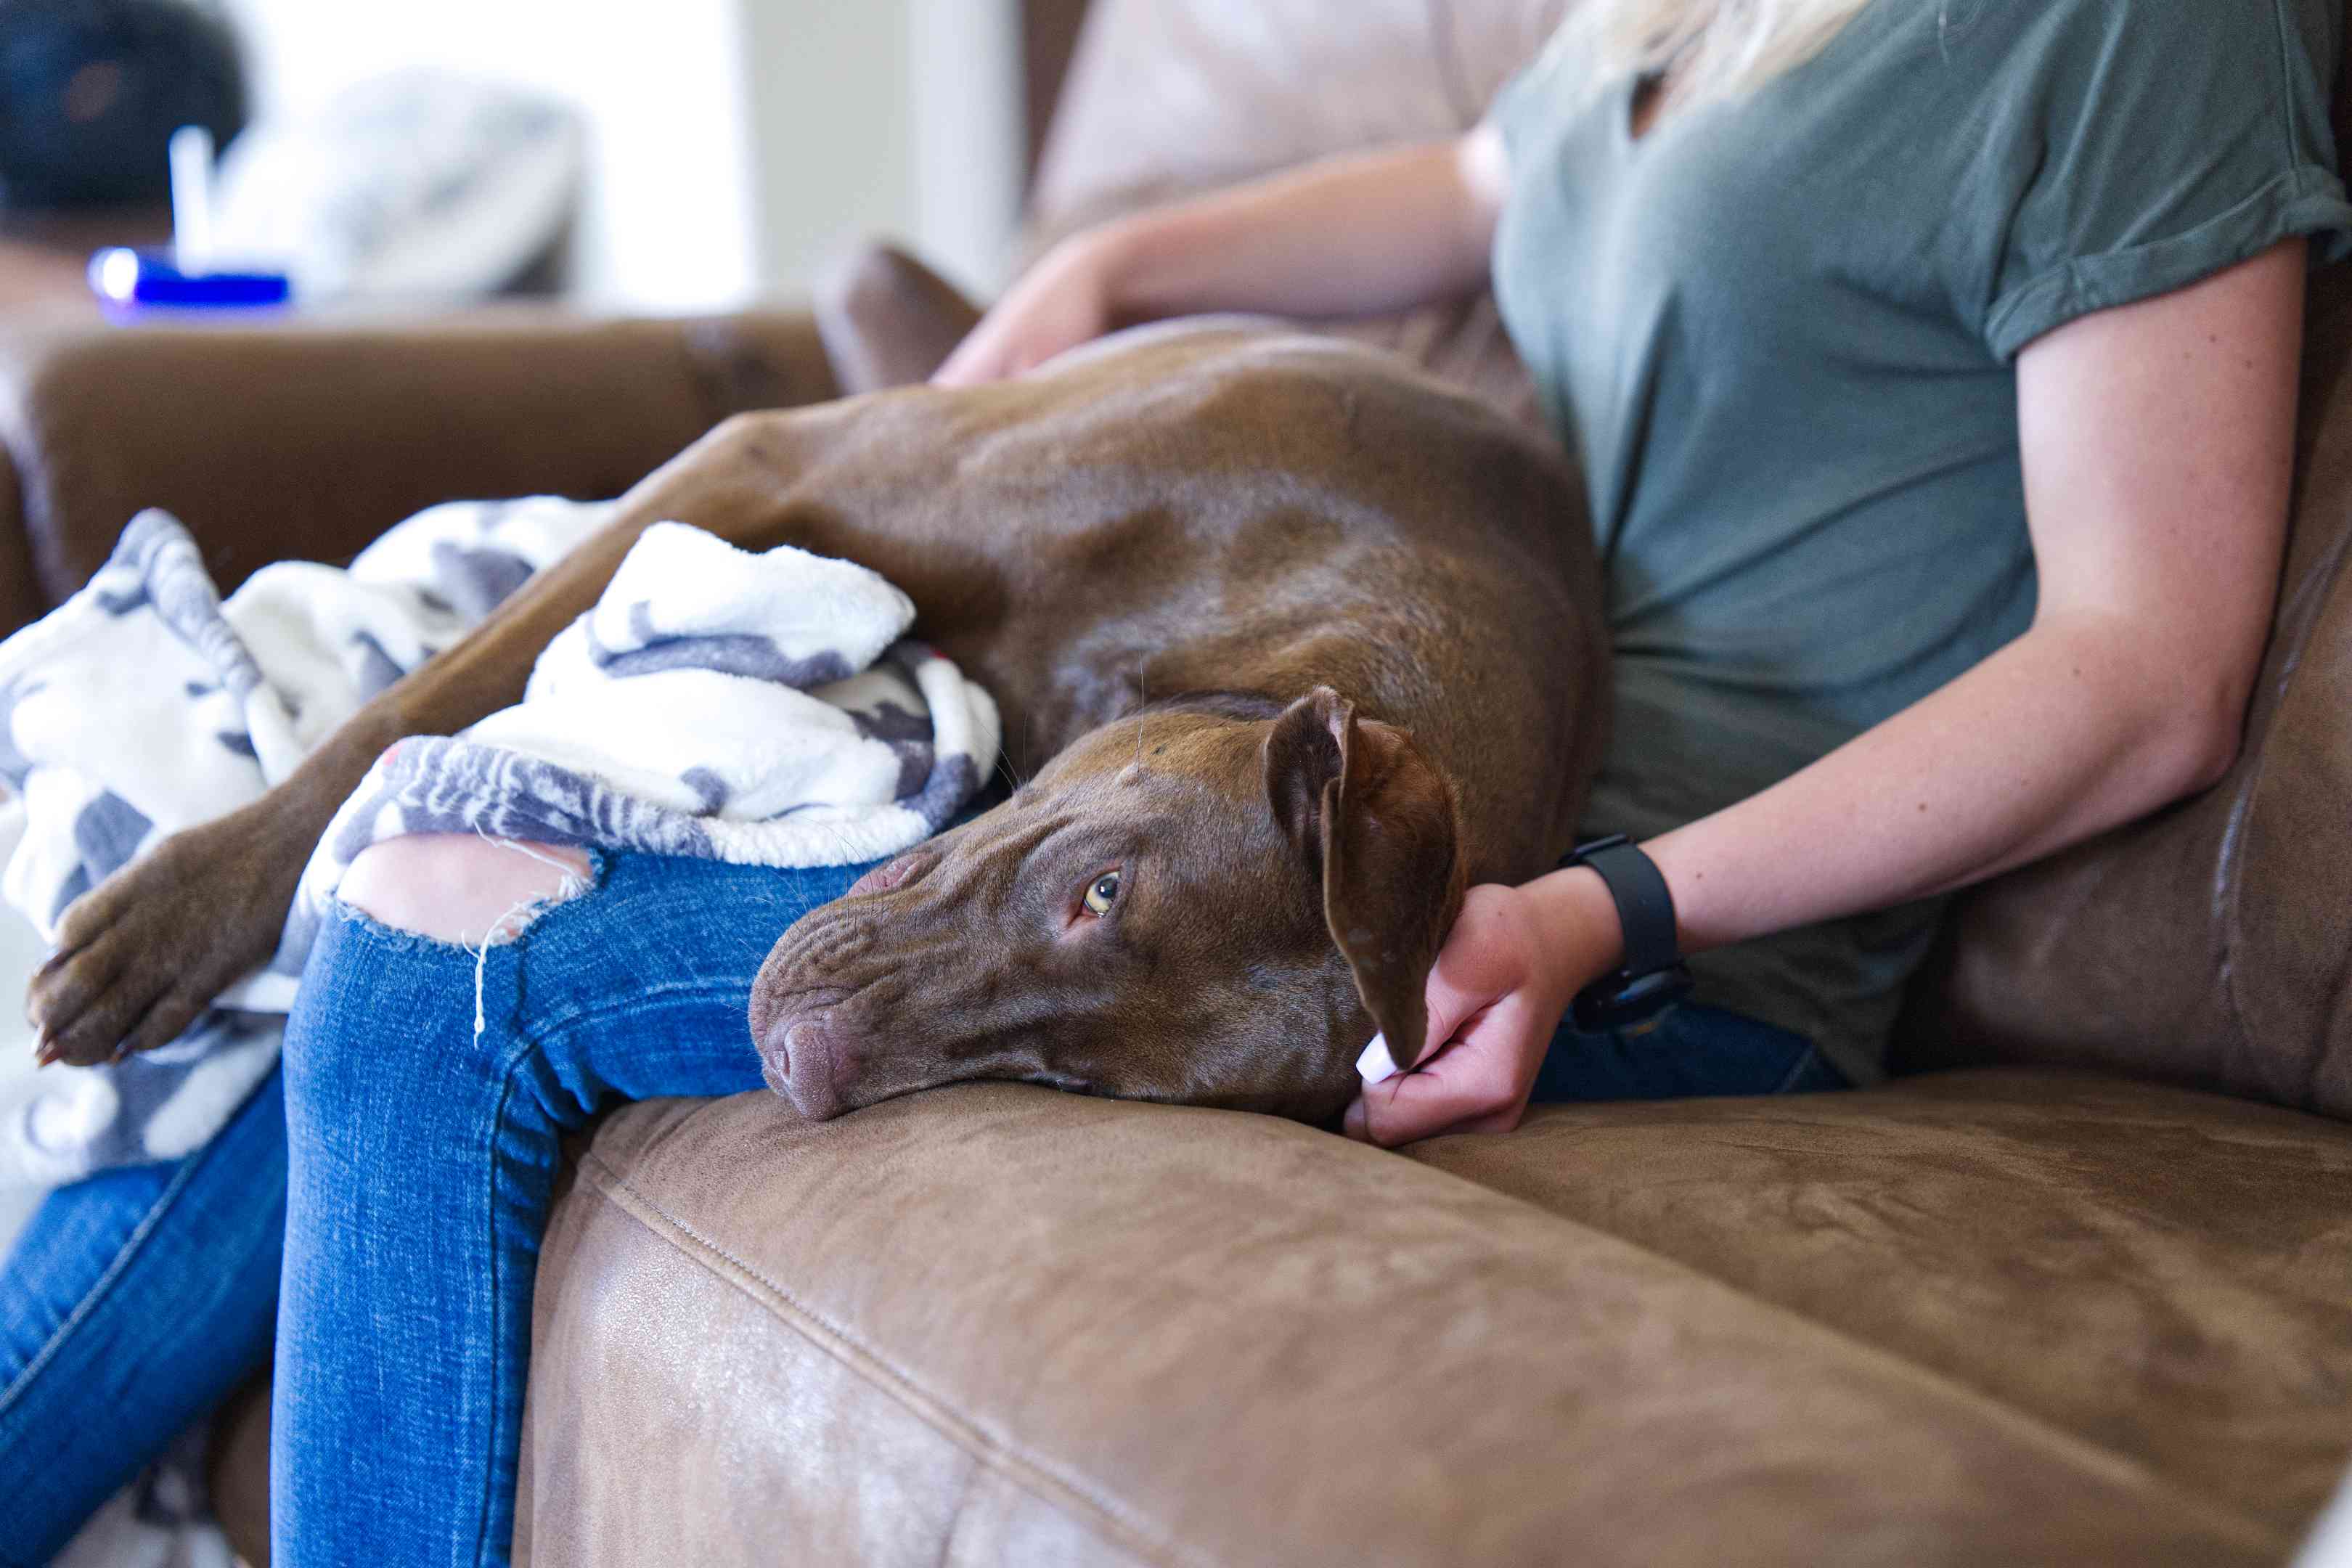 焦急的棕色实验室狗在所有者的膝盖上拥抱在棕色皮革沙发上“width=